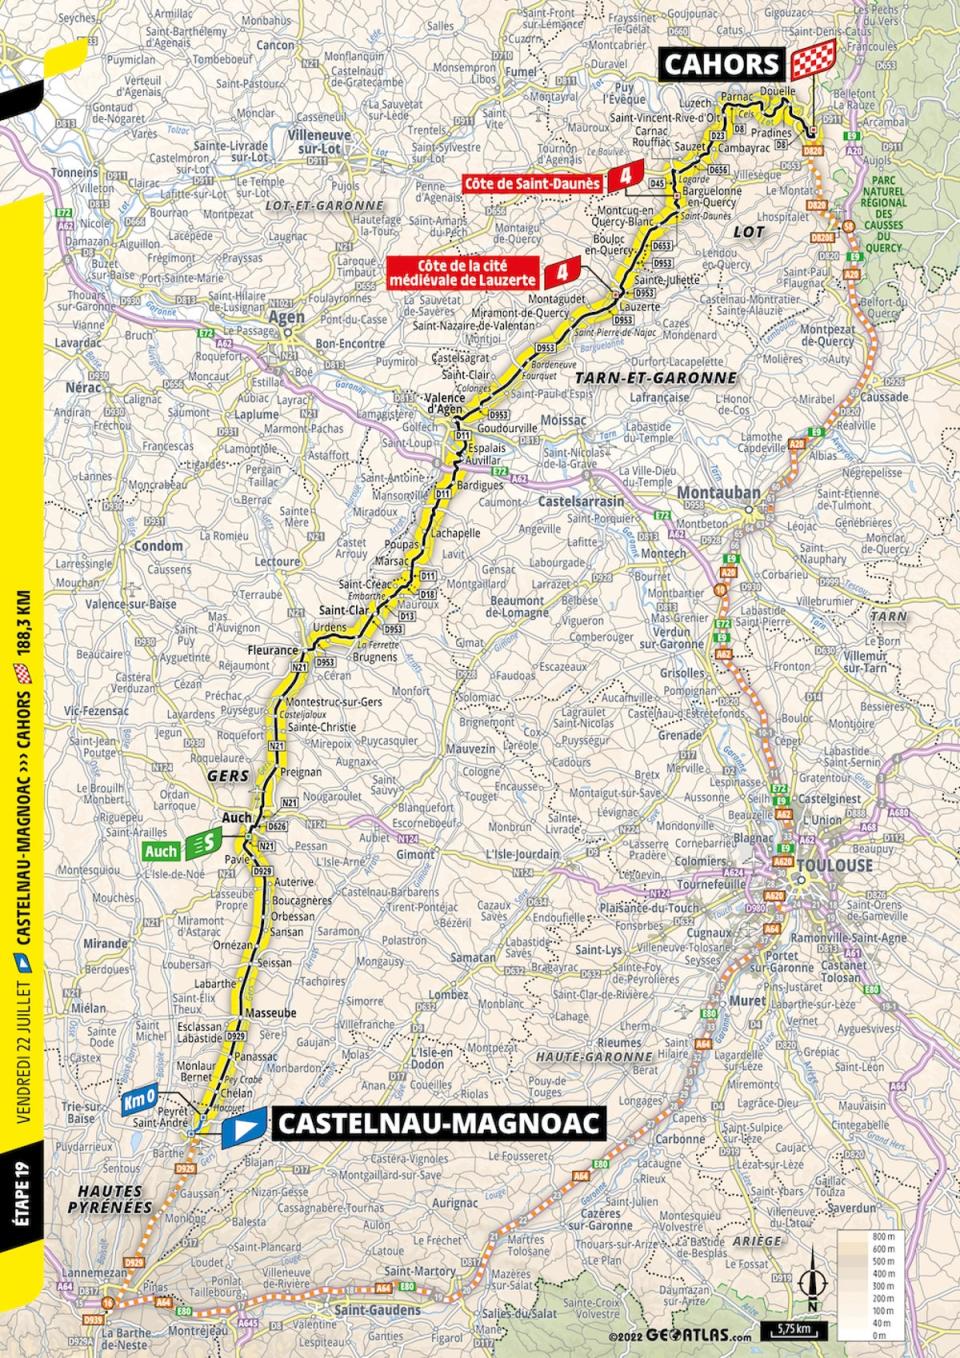 Tour de France Stage 19 (Tour de France)